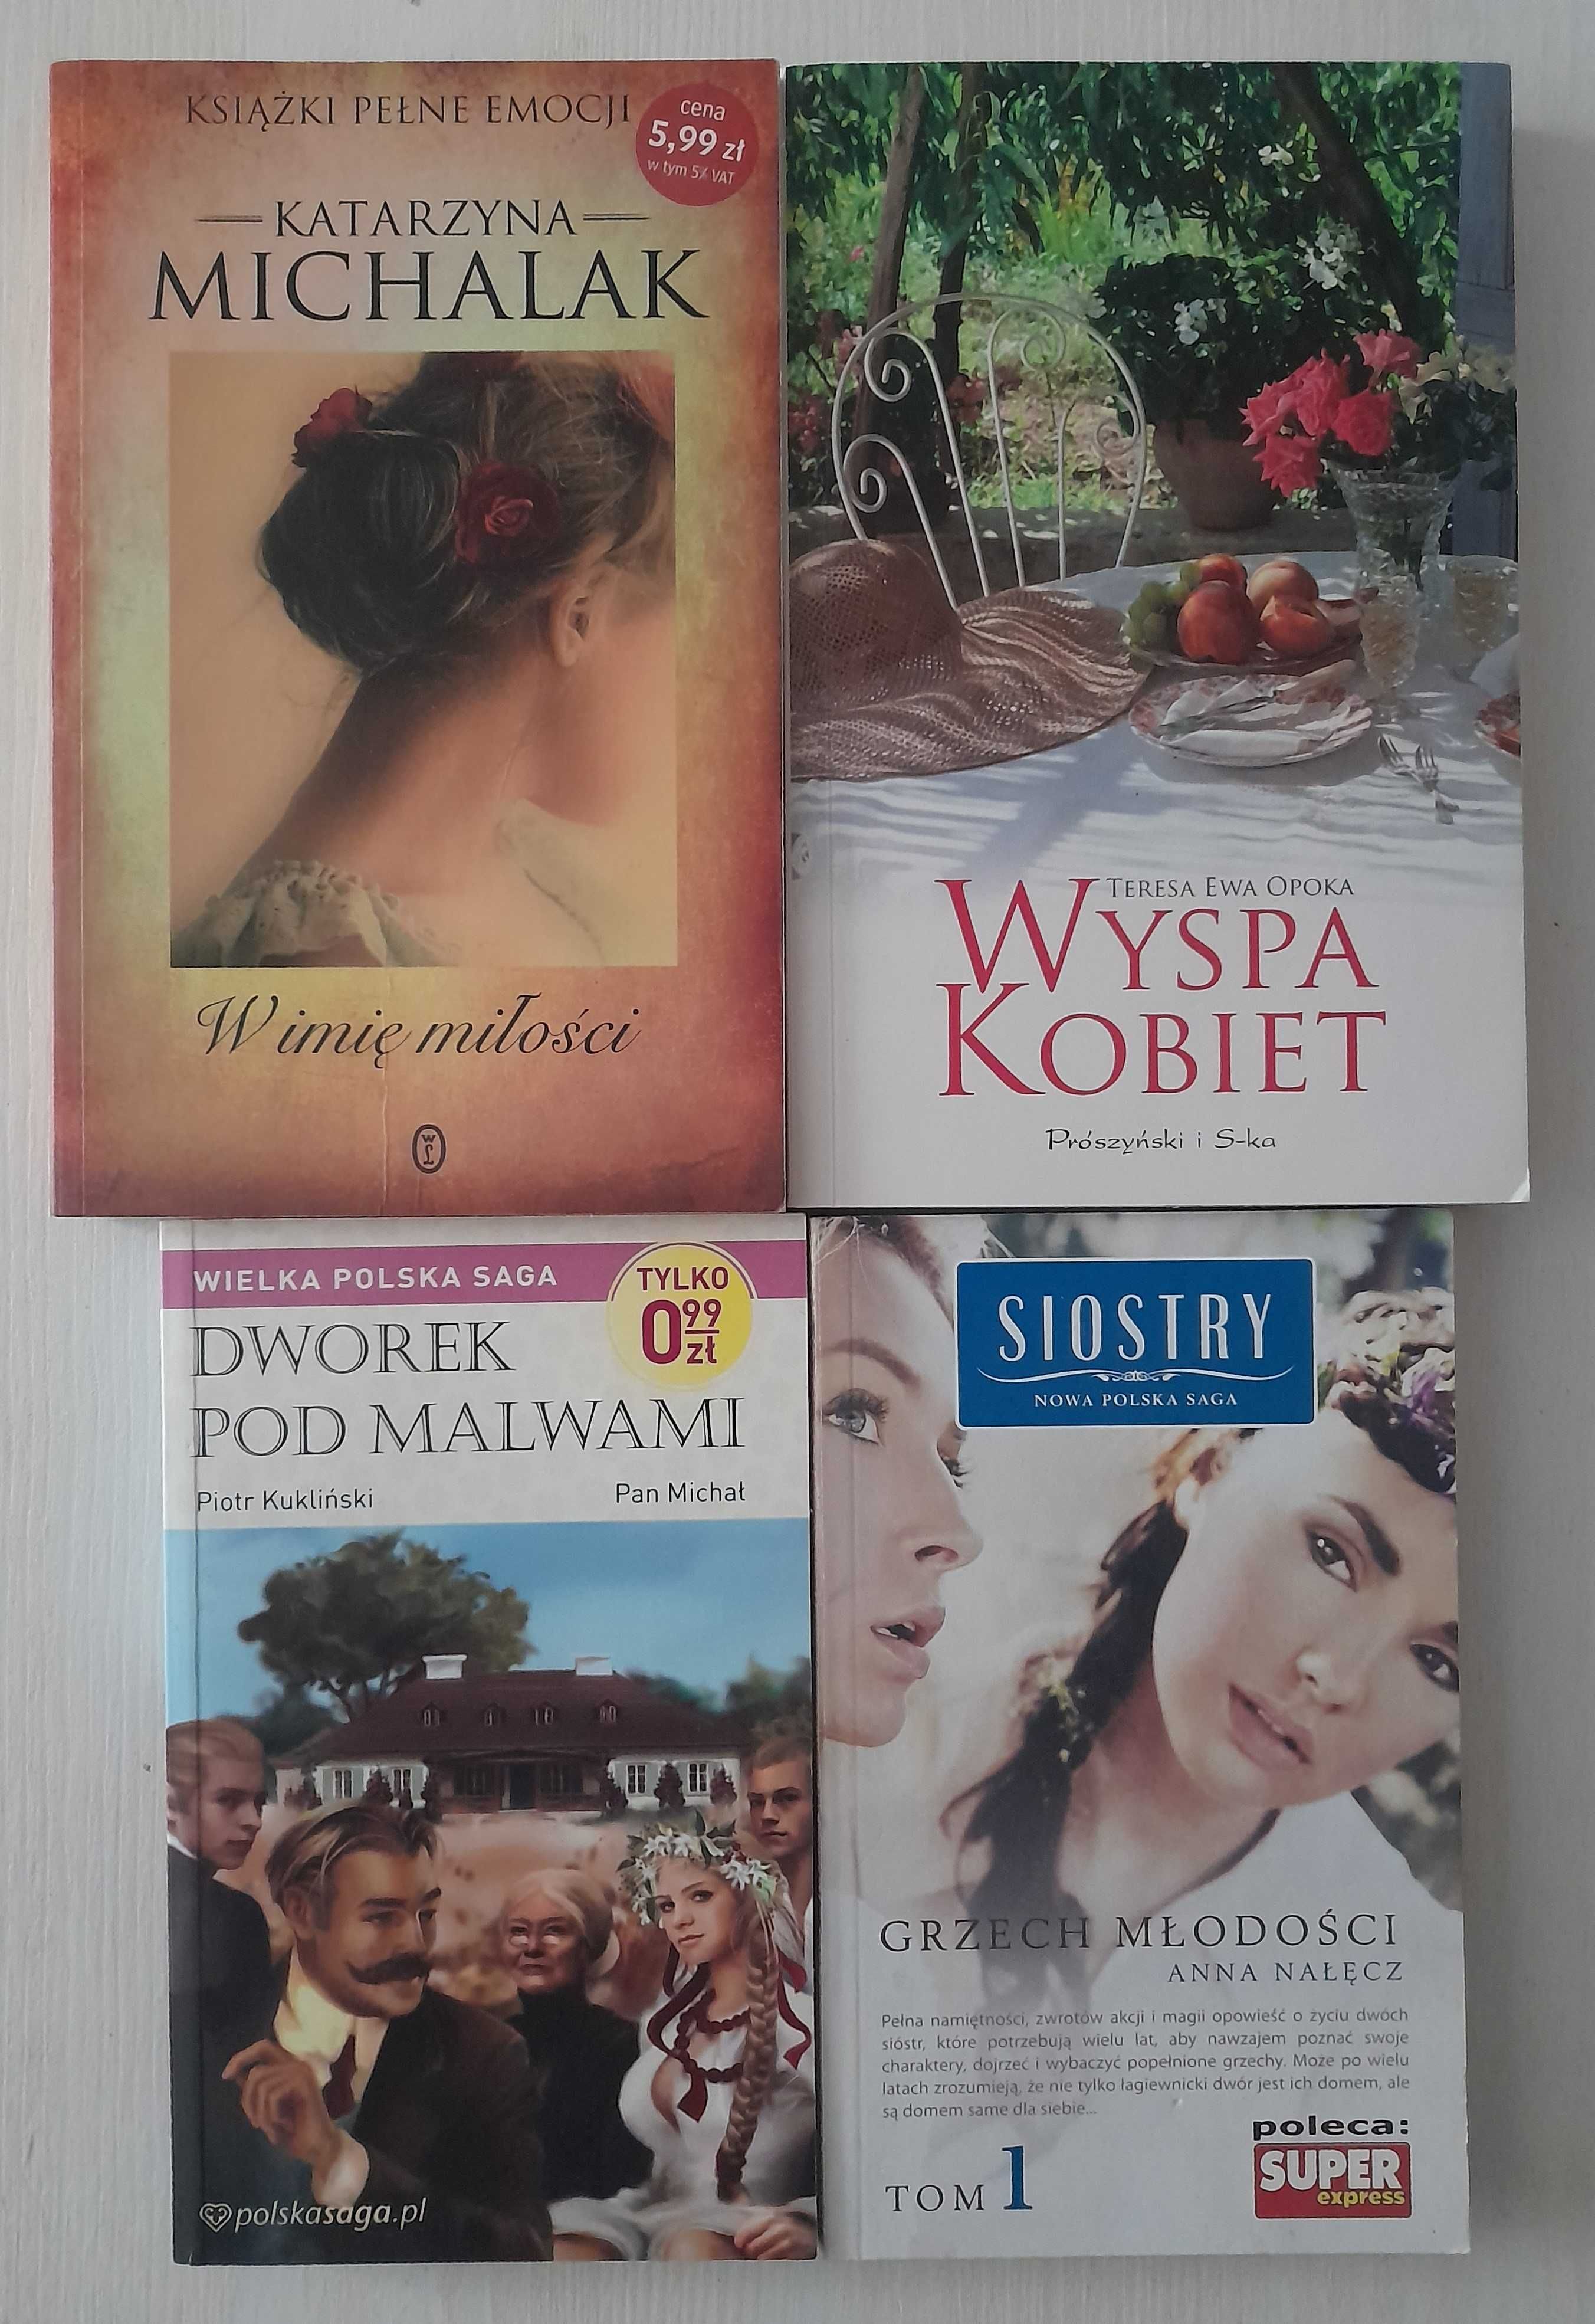 W imię miłości Katarzyna Michalak + książka + 2 gratisy